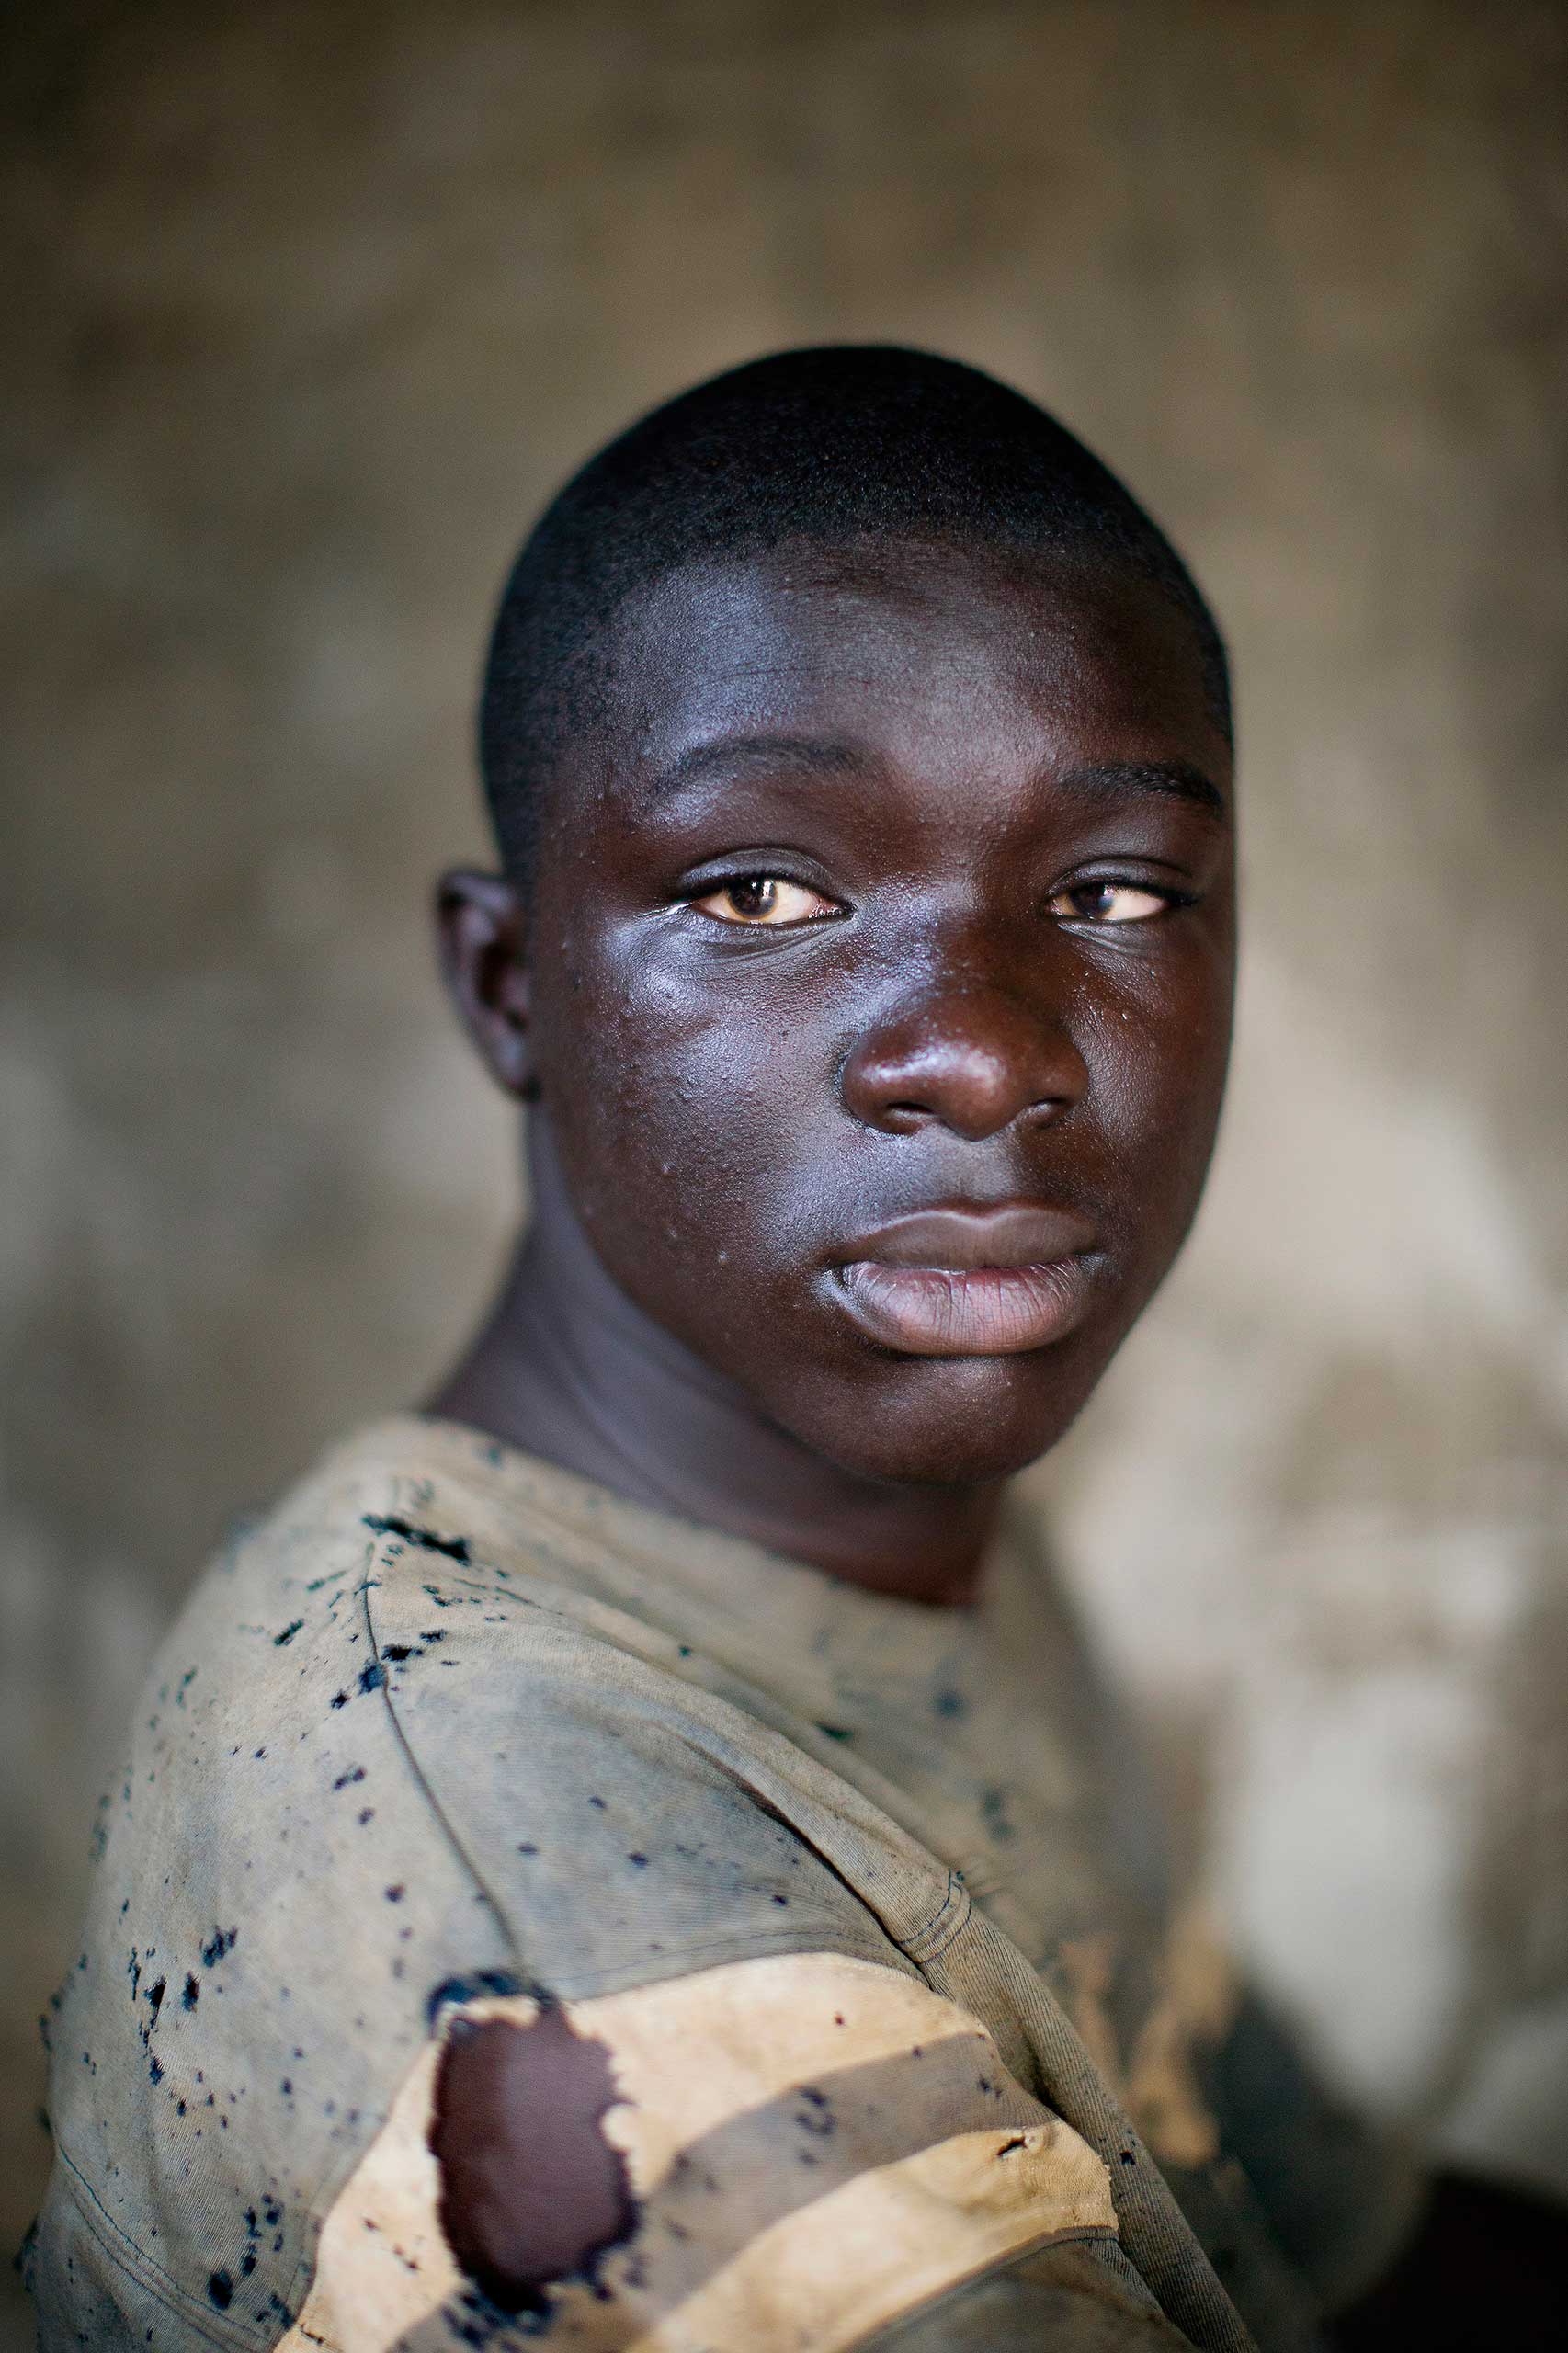 Blind boy in village hut, 2014.